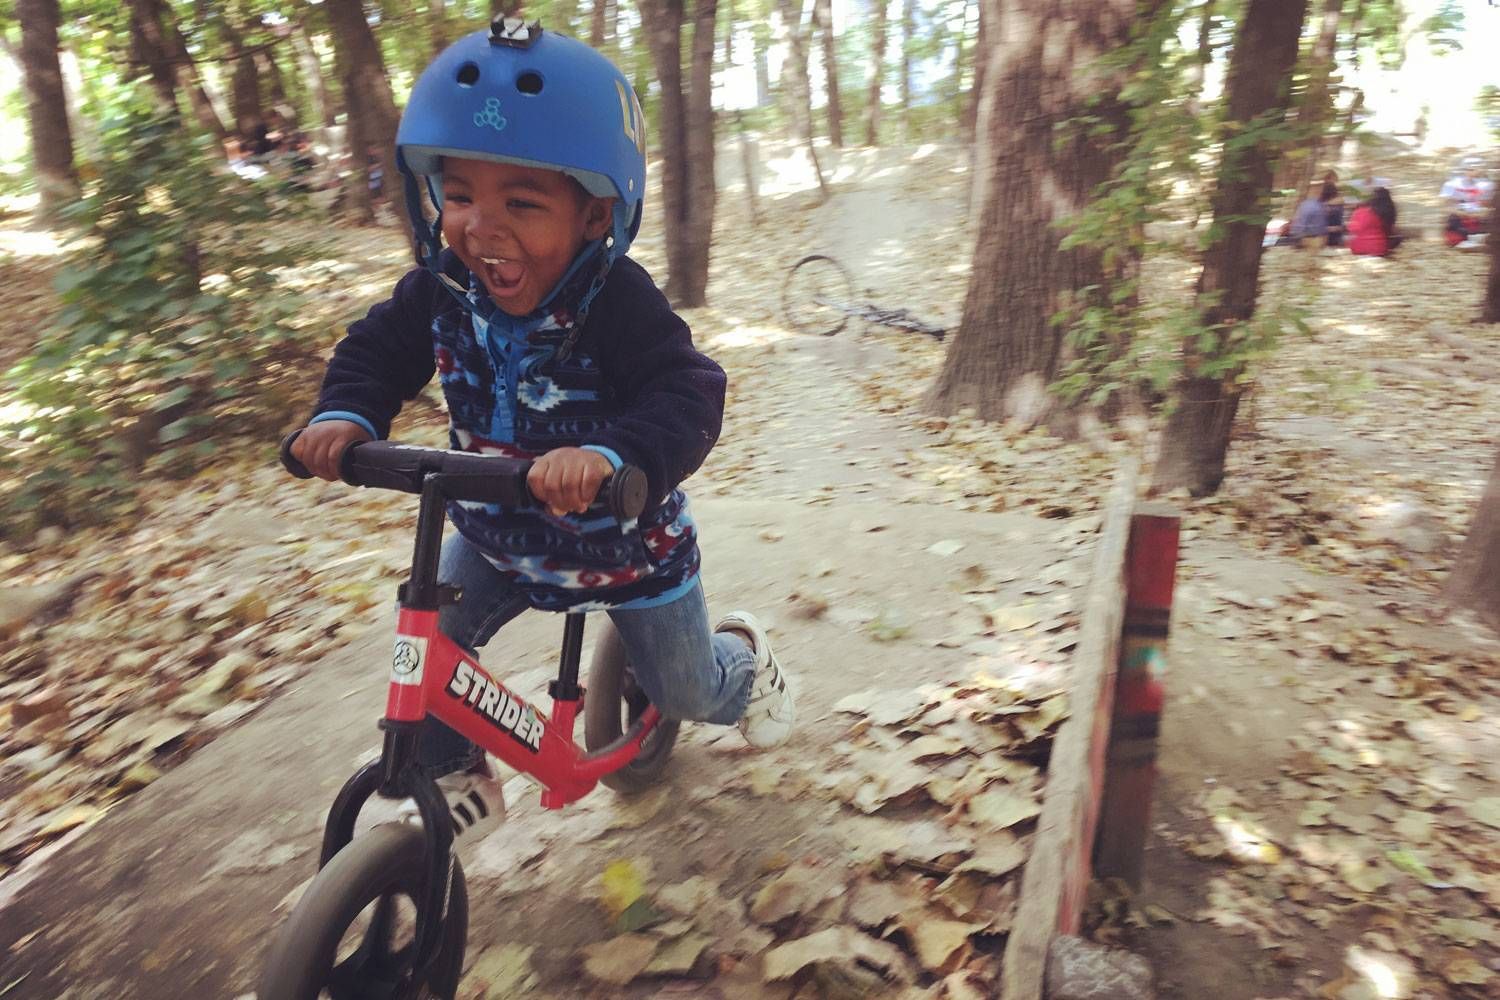 A boy rides a red Strider balance bike